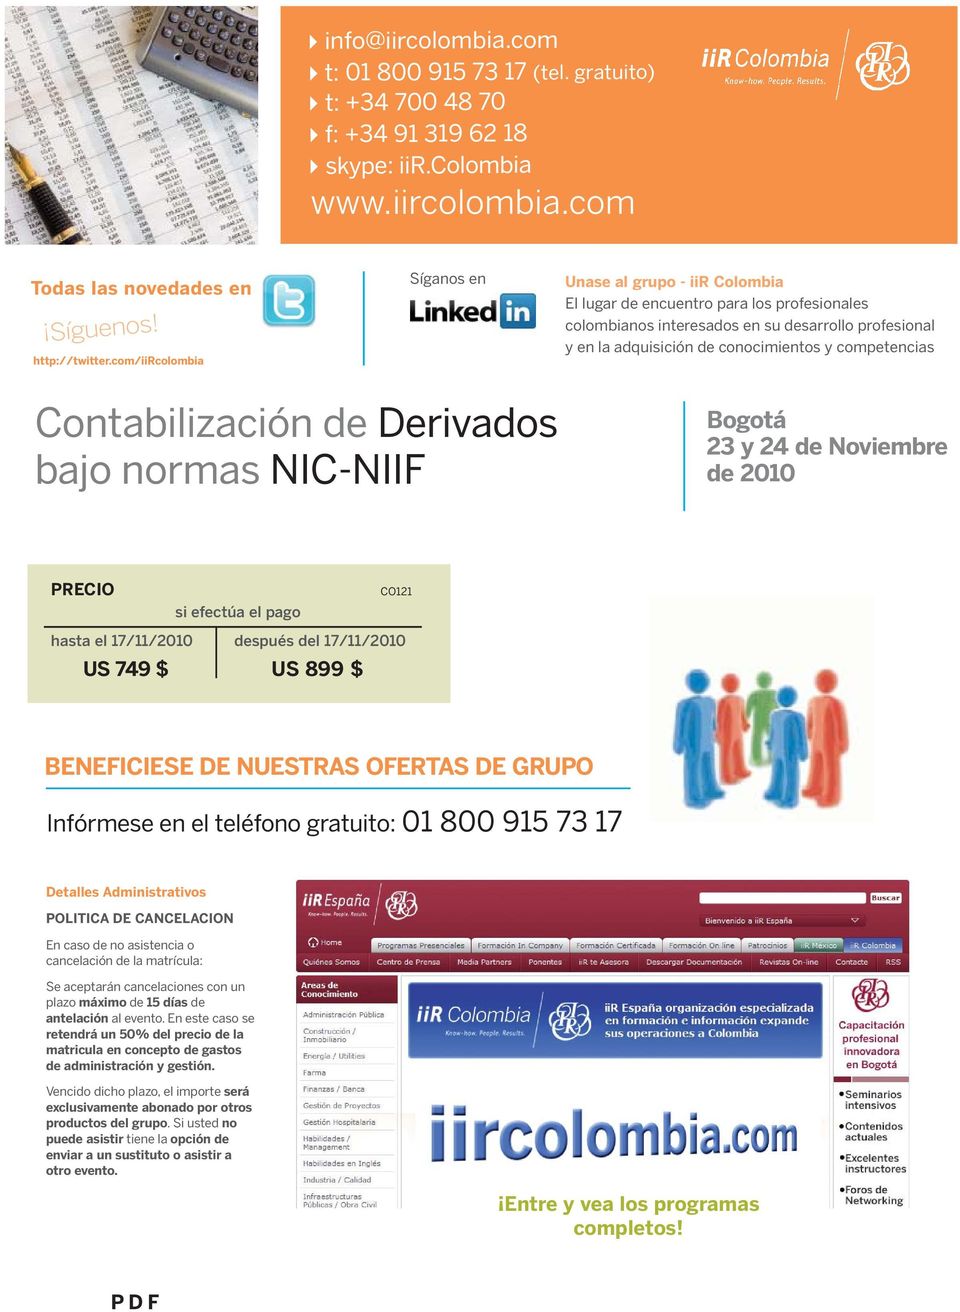 competencias Contabilización de Derivados bajo normas NIC-NIIF Bogotá 23 y 24 de Noviembre de 2010 PRECIO si efectúa el pago CO121 hasta el 17/11/2010 después del 17/11/2010 US 749 $ US 899 $